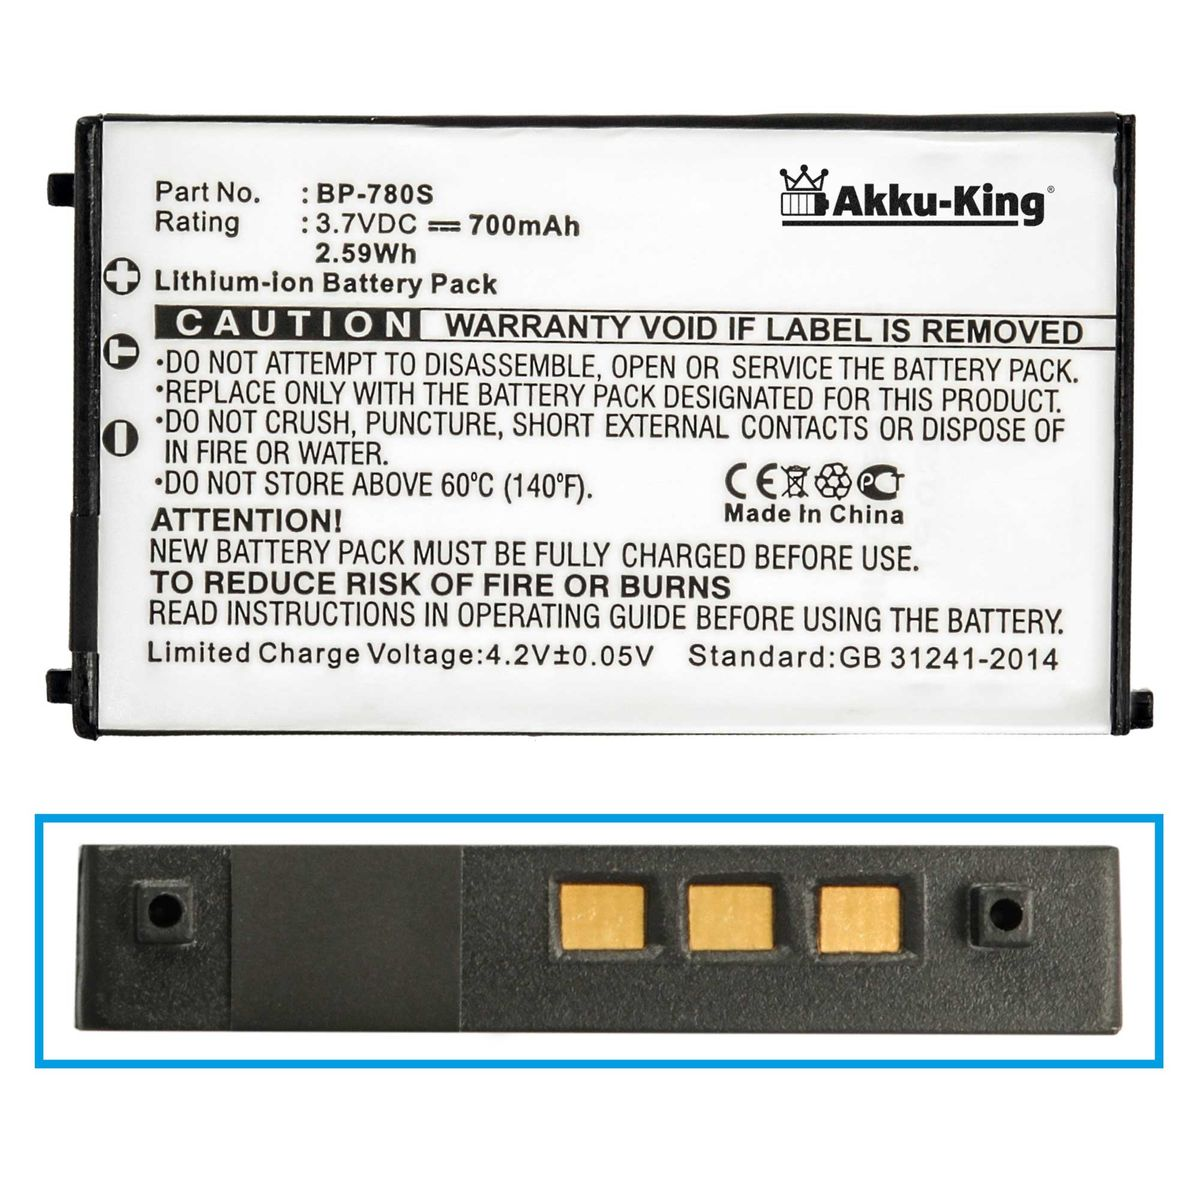 AKKU-KING Akku kompatibel mit Kyocera Li-Ion Kamera-Akku, Volt, BP-780S 3.7 700mAh